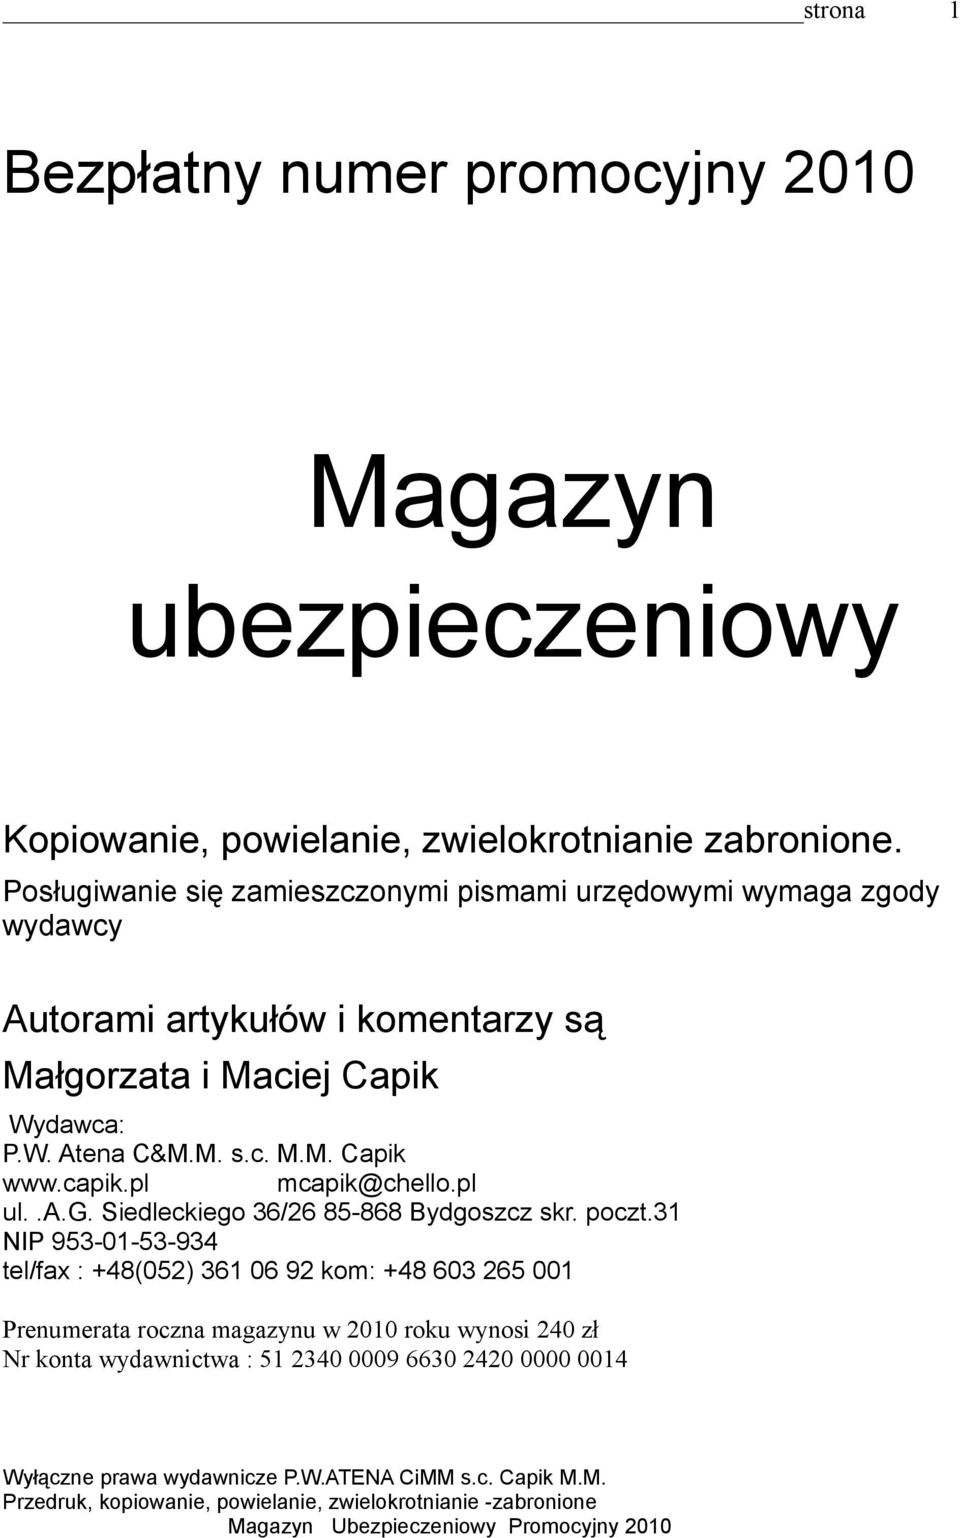 Wydawca: P.W. Atena C&M.M. s.c. M.M. Capik www.capik.pl mcapik@chello.pl ul..a.g. Siedleckiego 36/26 85-868 Bydgoszcz skr. poczt.